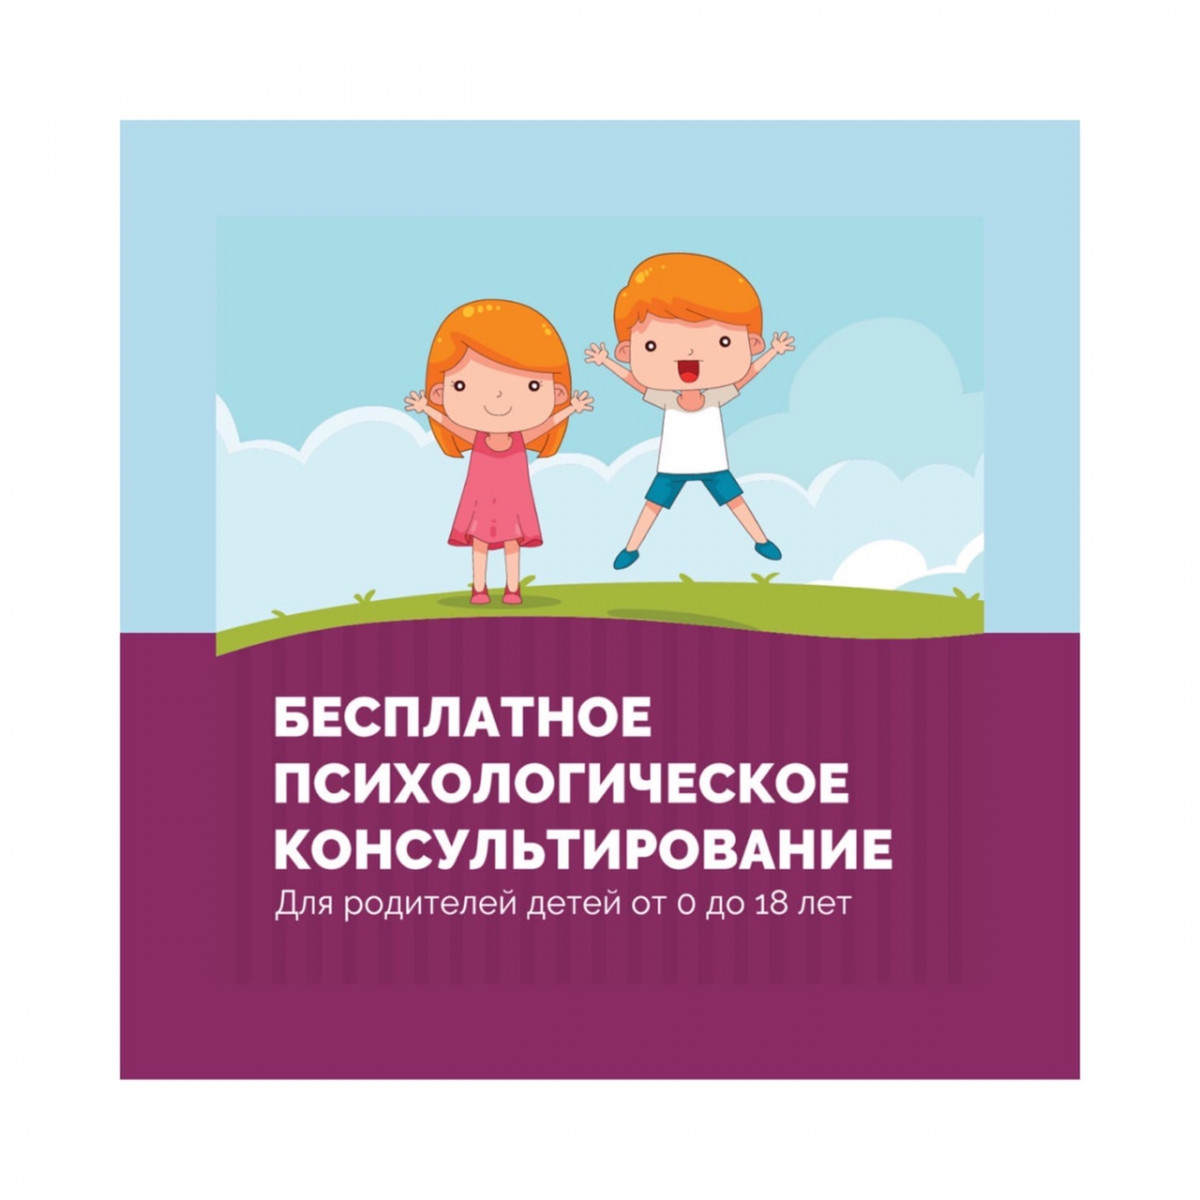 Бесплатные консультации психологов для родителей и детей проходят в ТОС и соседских центрах Нижнего Новгорода